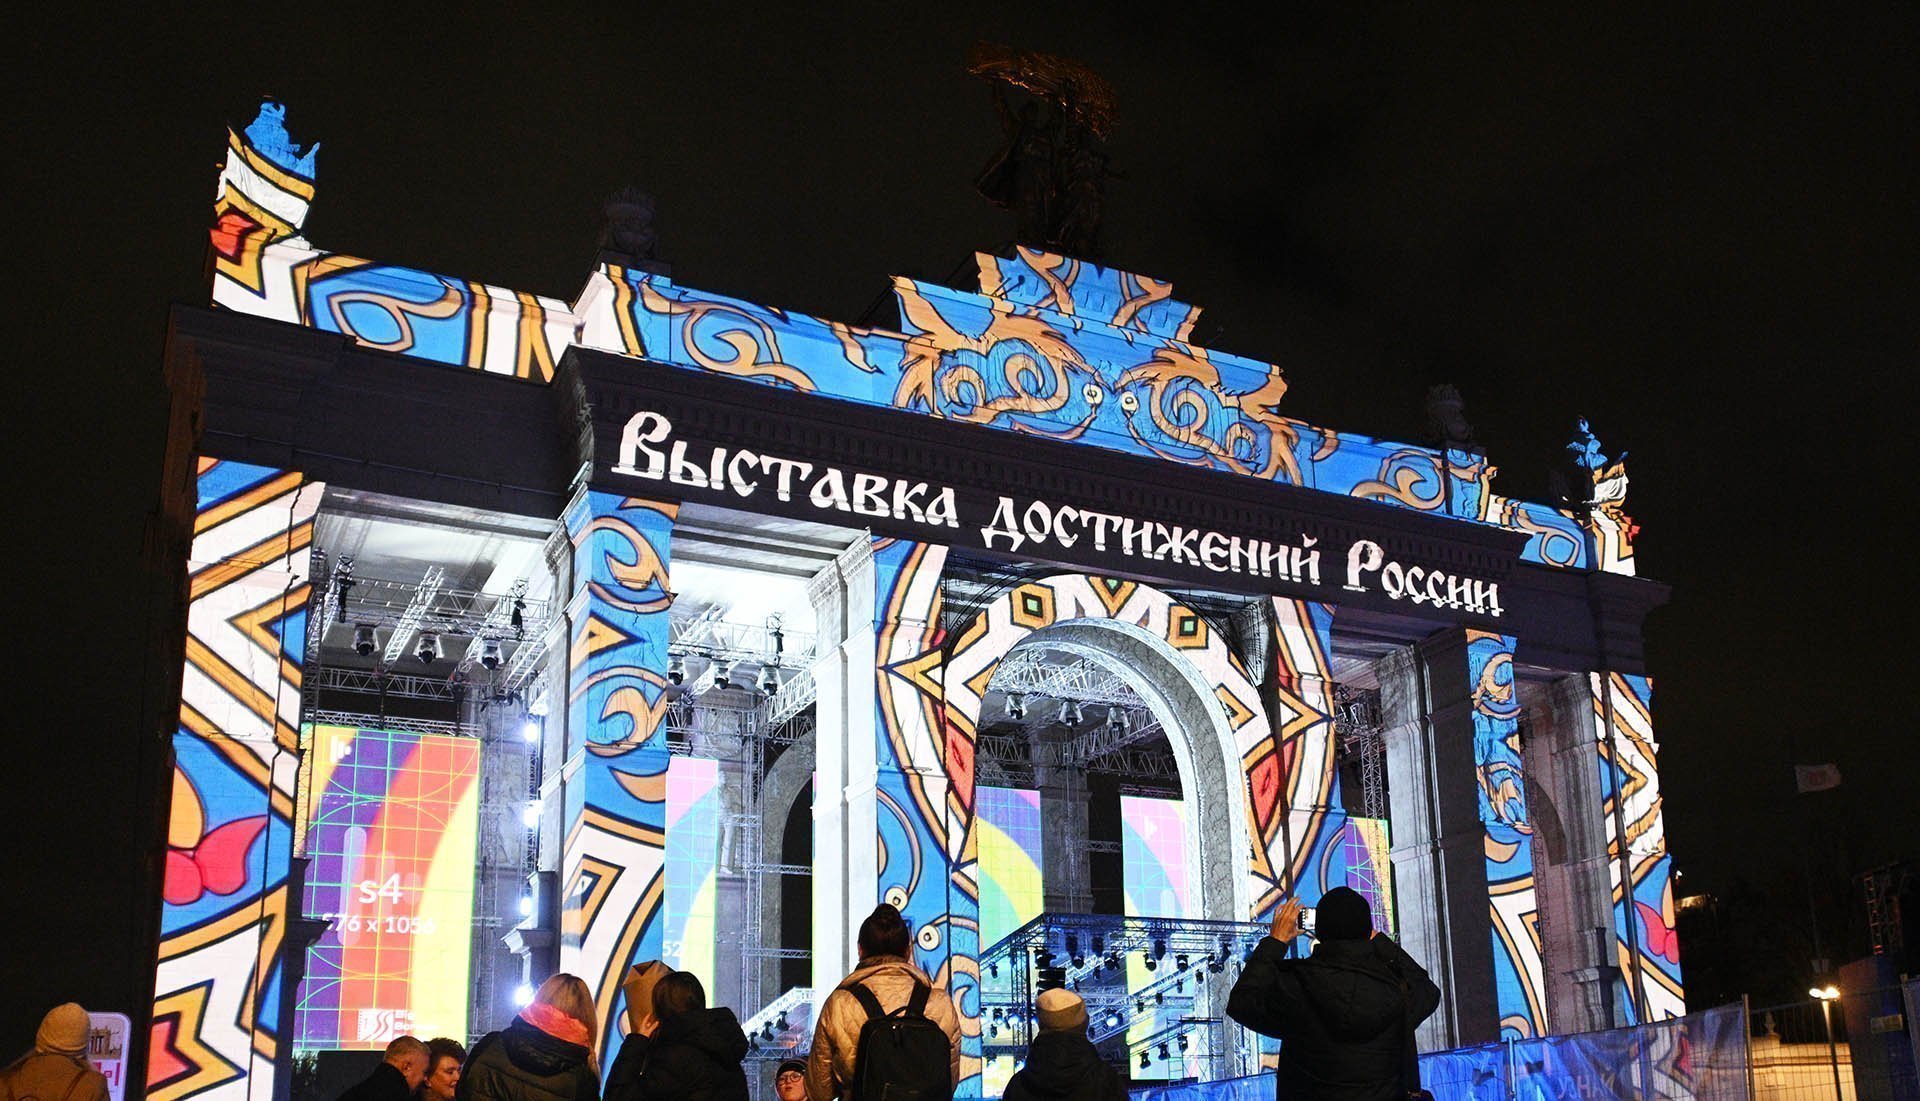 световая инсталляция арки на ВДНХ перед открытием Международной выставки-форума "Россия"